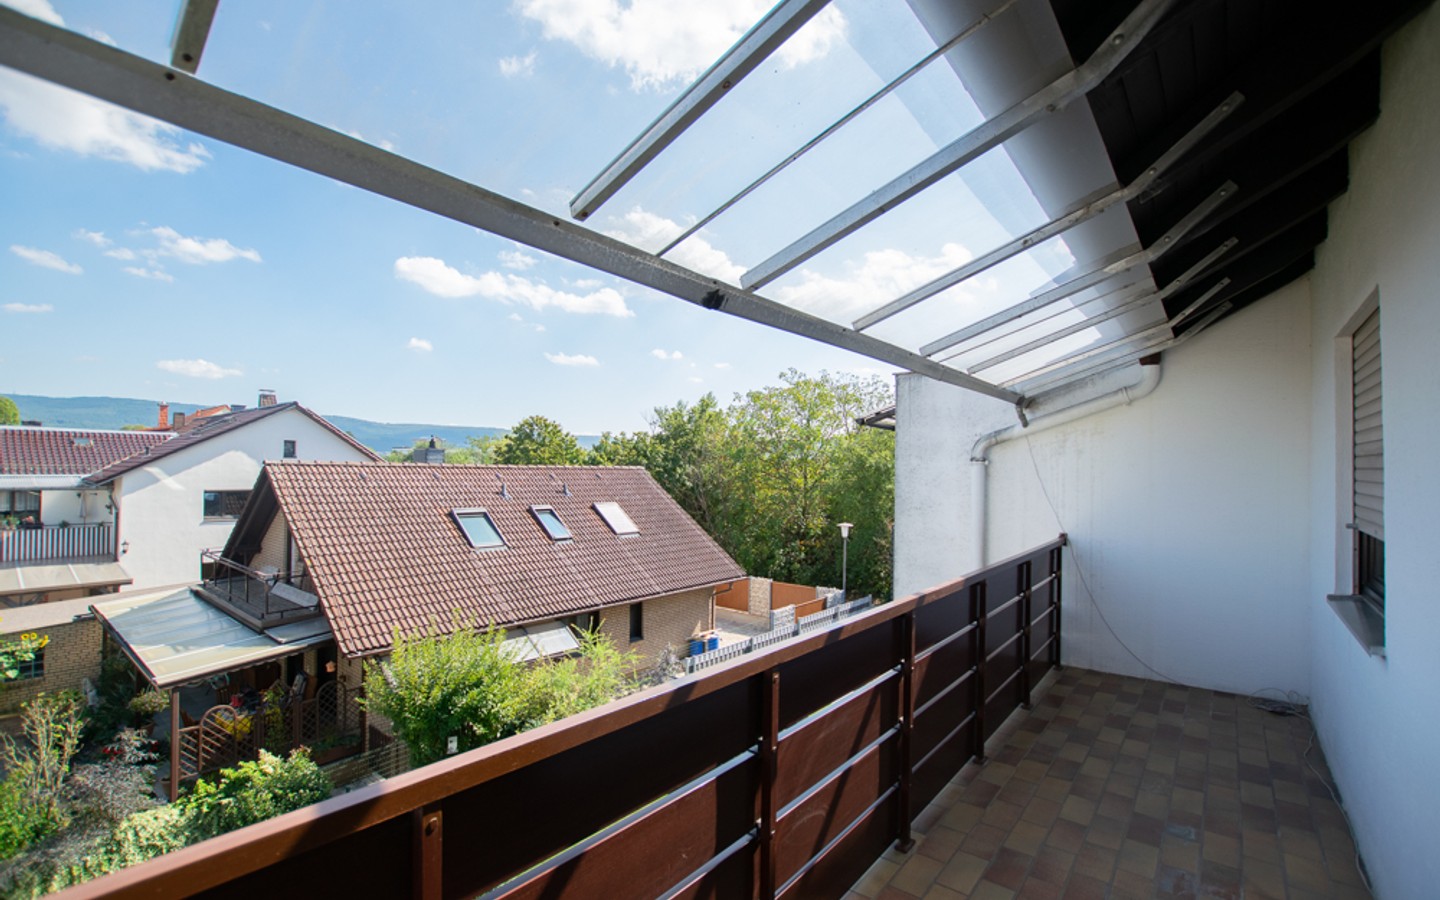 Balkon OG - Eppelheim: Raumwunder mit viel Platz und tollem Garten